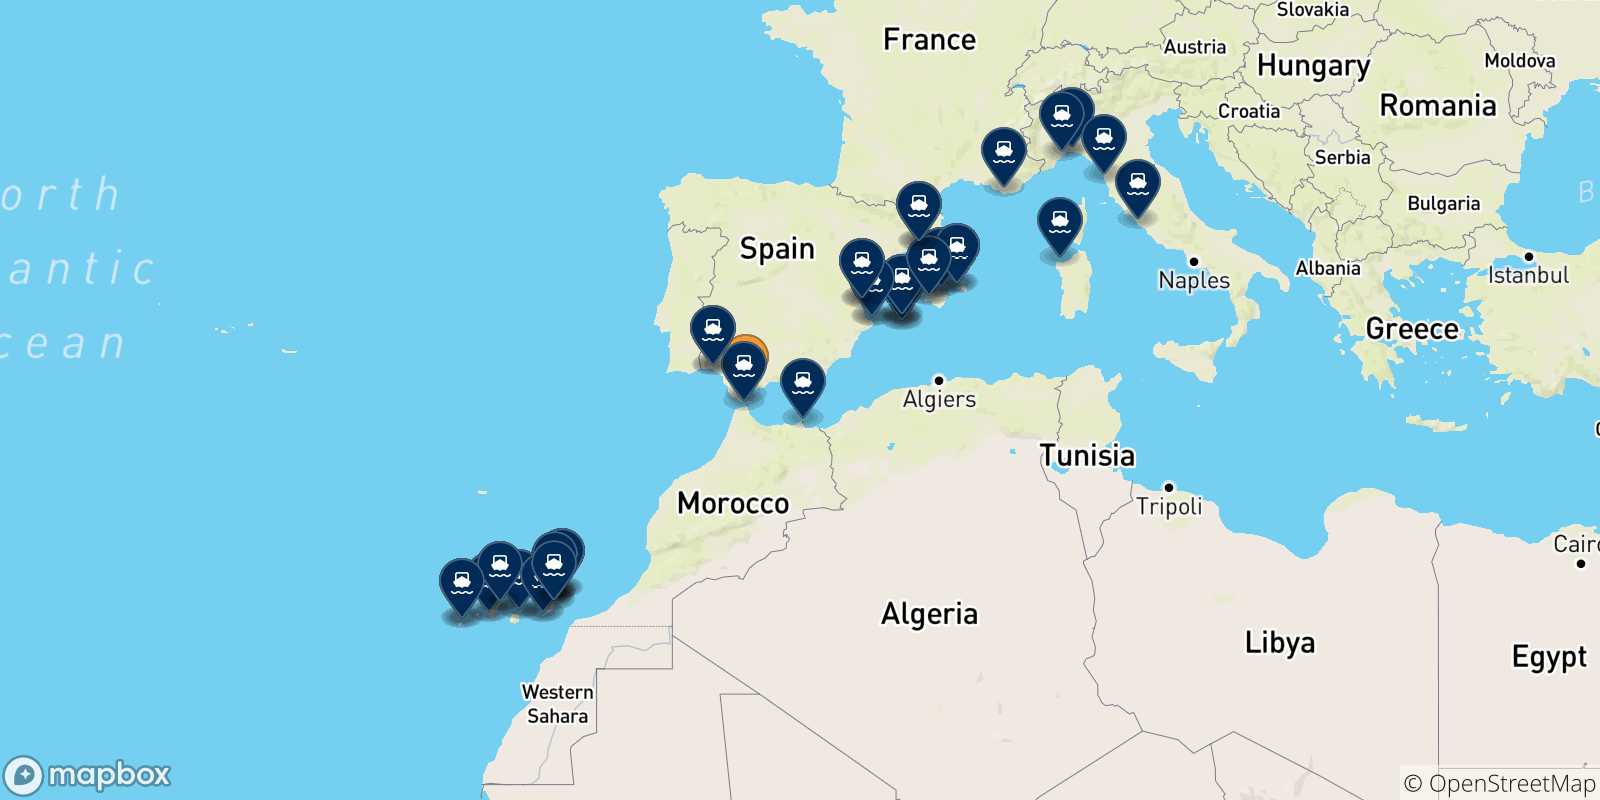 Mappa delle destinazioni raggiungibili dalla Spagna